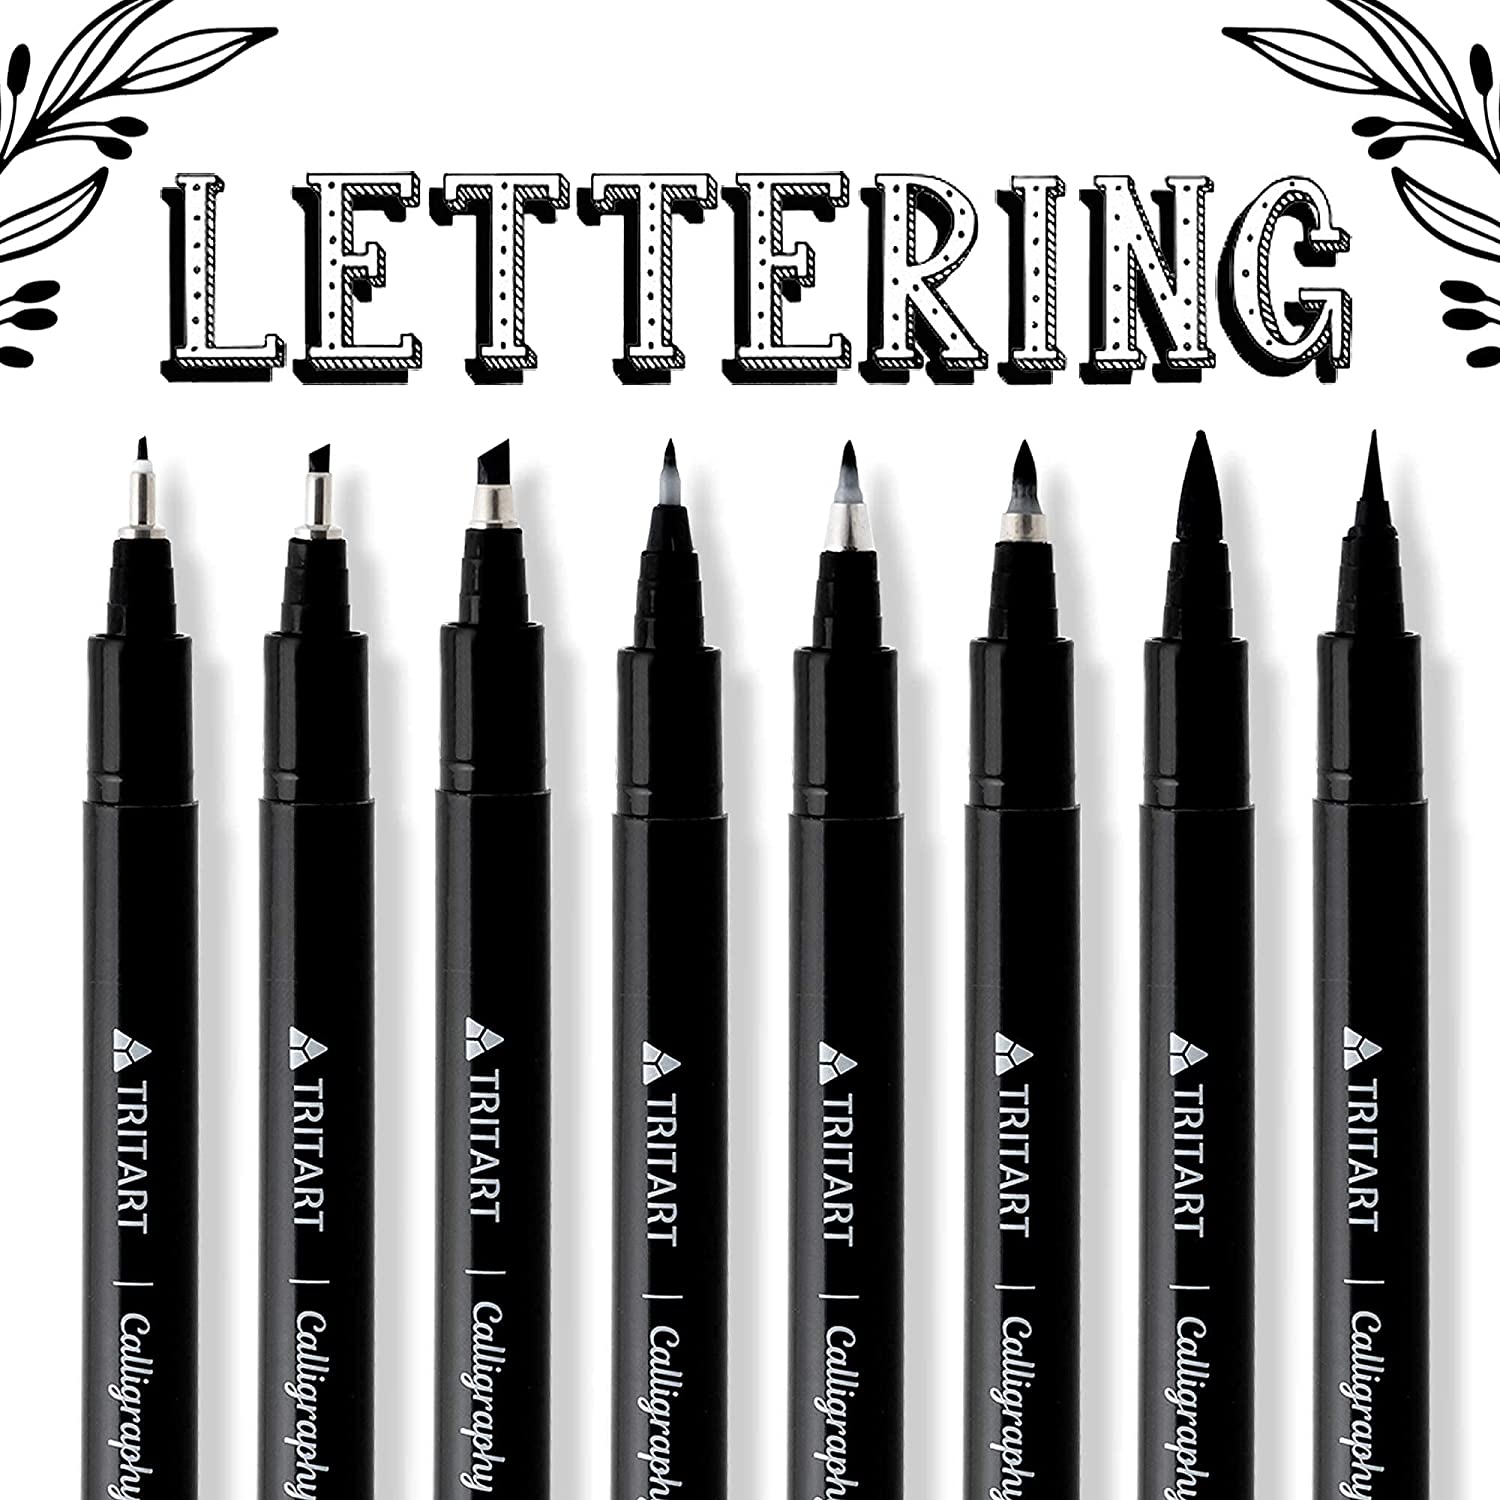 TRITART Kalligraphie Stifte Set – 8 Pinselstifte, Brush Pens mit versc –  Tritart